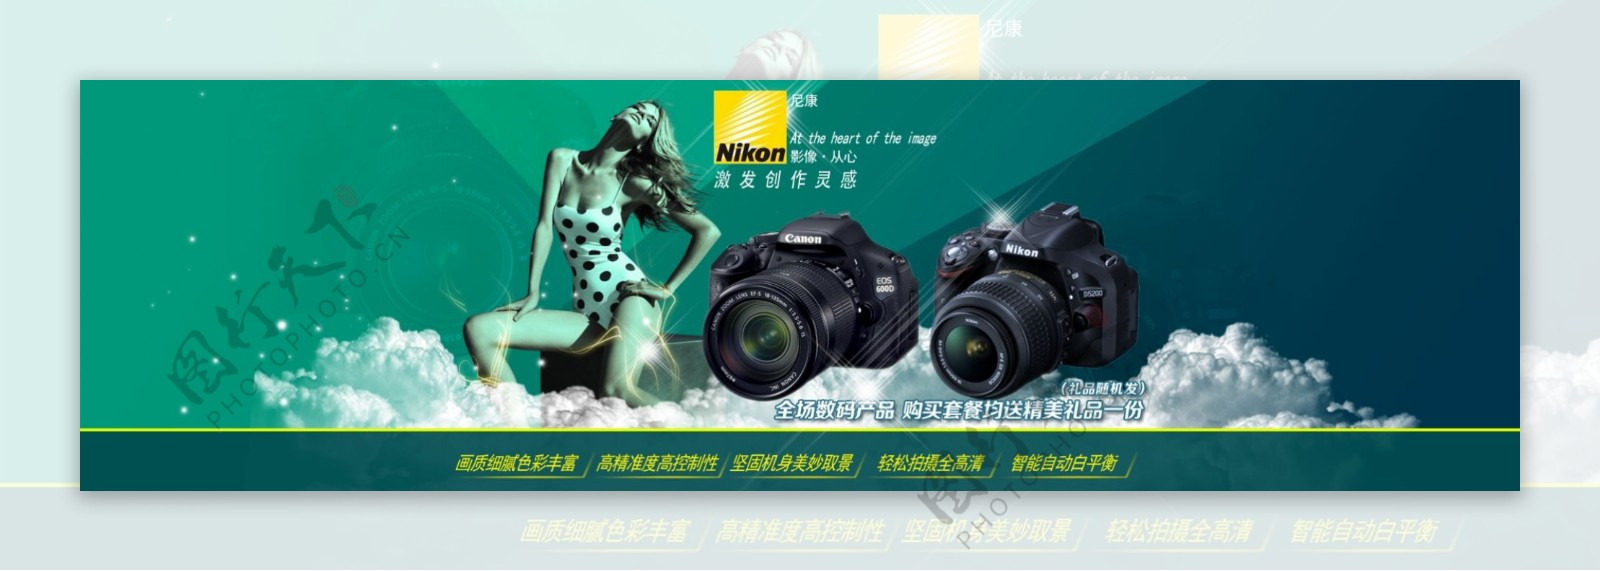 相机淘宝天猫全屏促销海报PSD下载